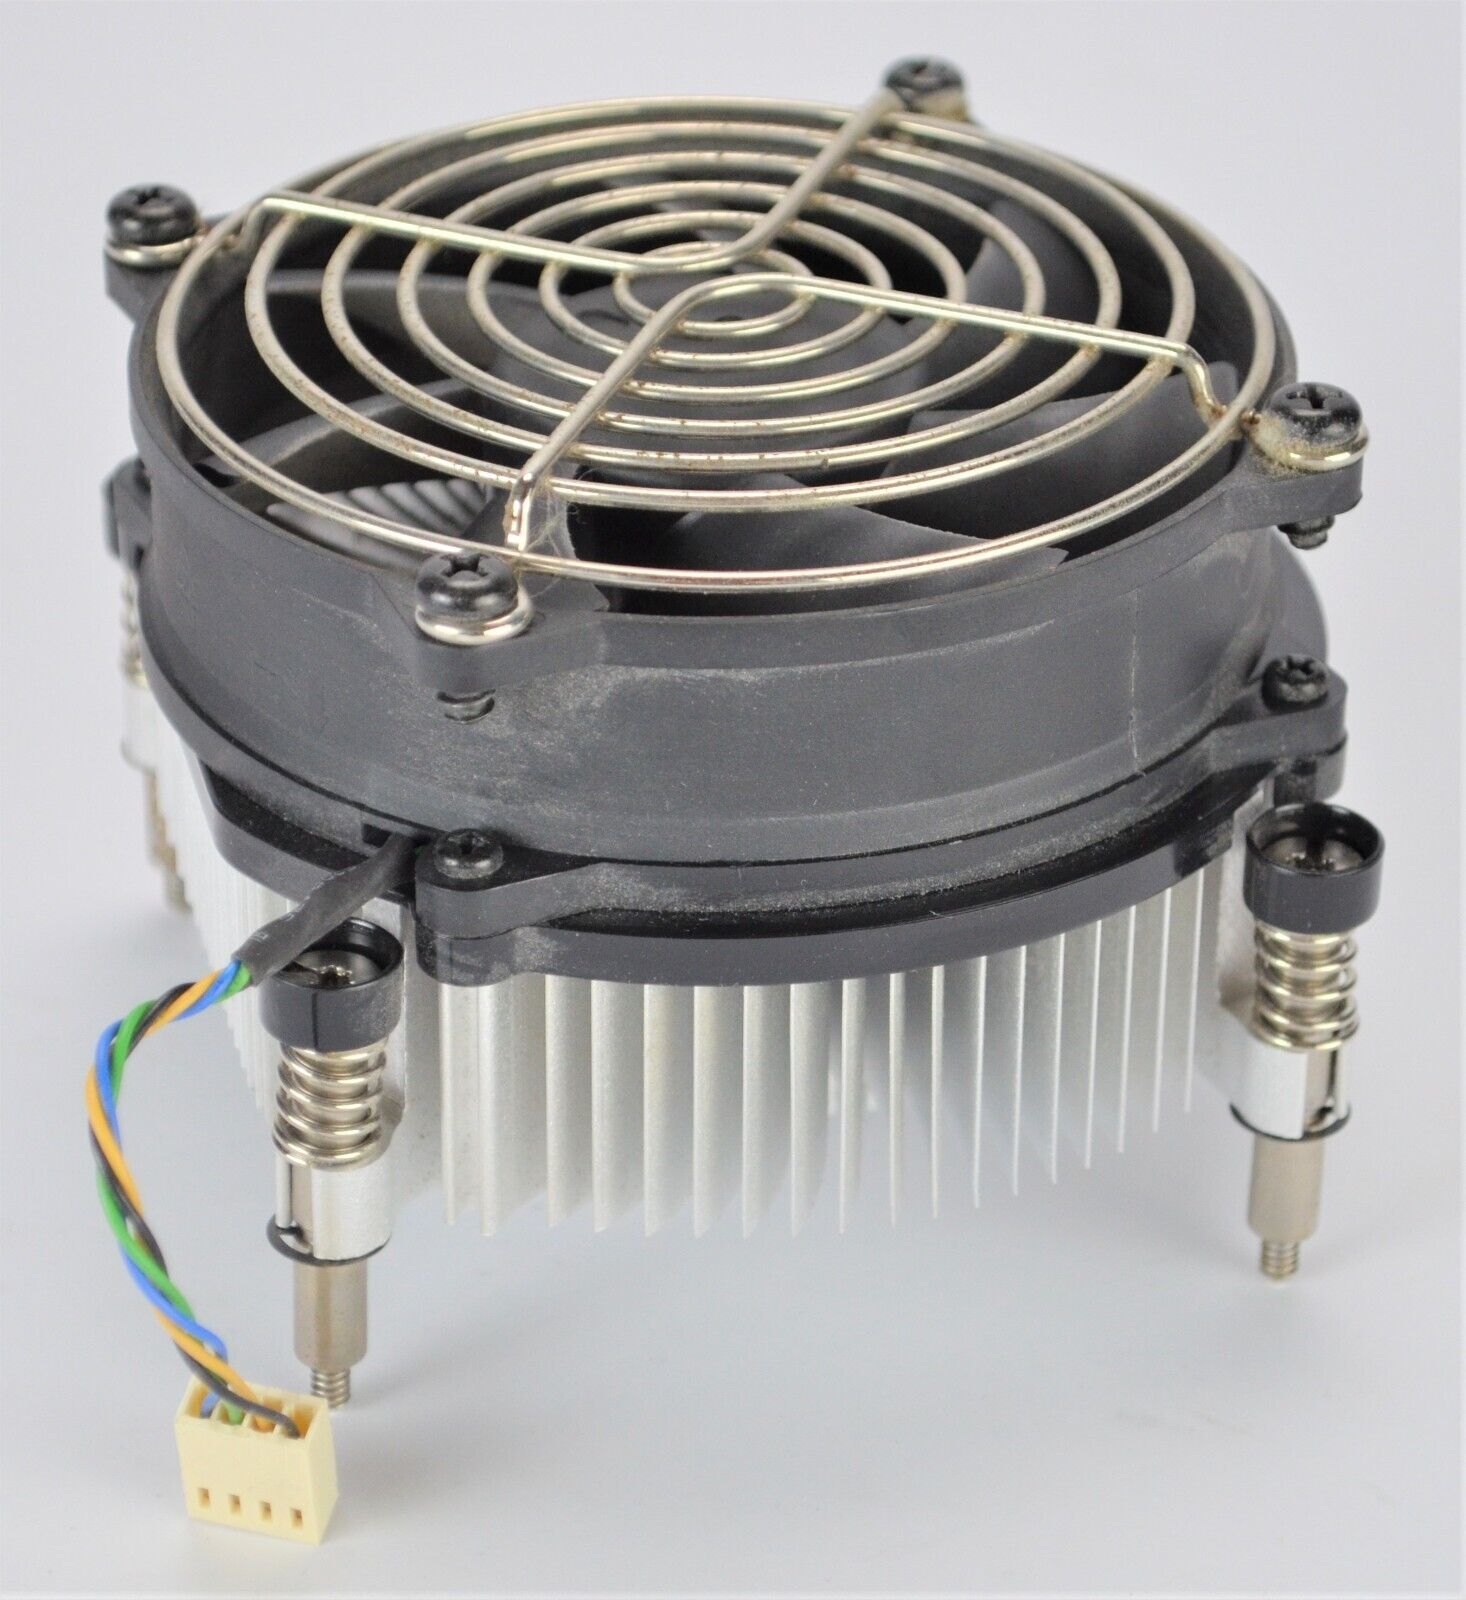 HP Compaq Elite 8100 Z200 Minitower CPU Cooling Fan & Heatsink 577795 4 Wire Fan